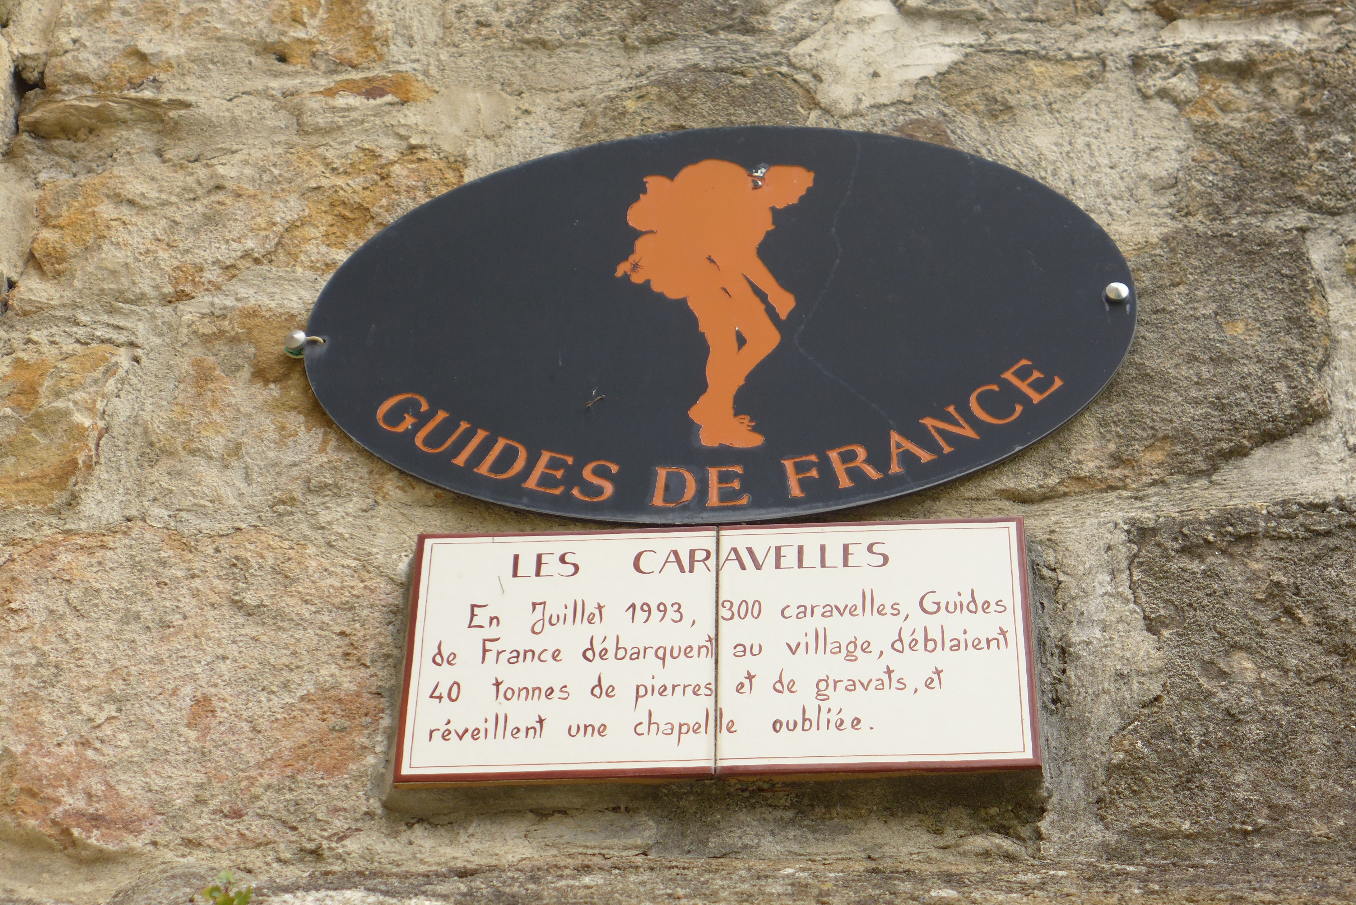 Guides de France